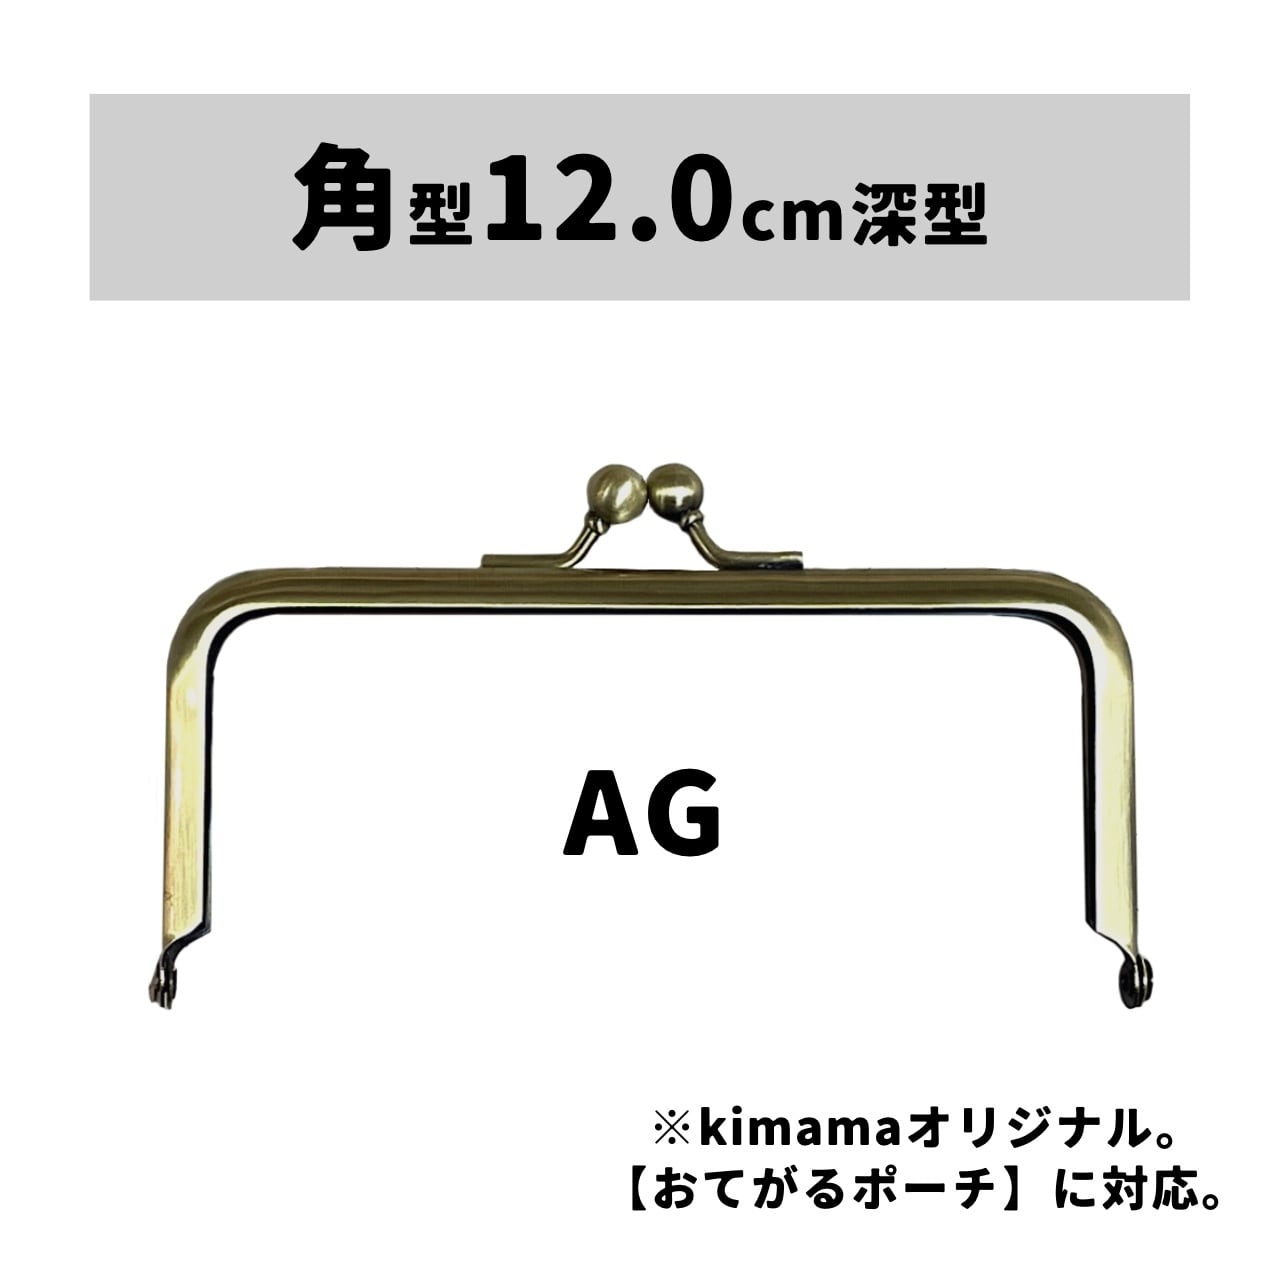 口金 : 角型12.0cm深型AG